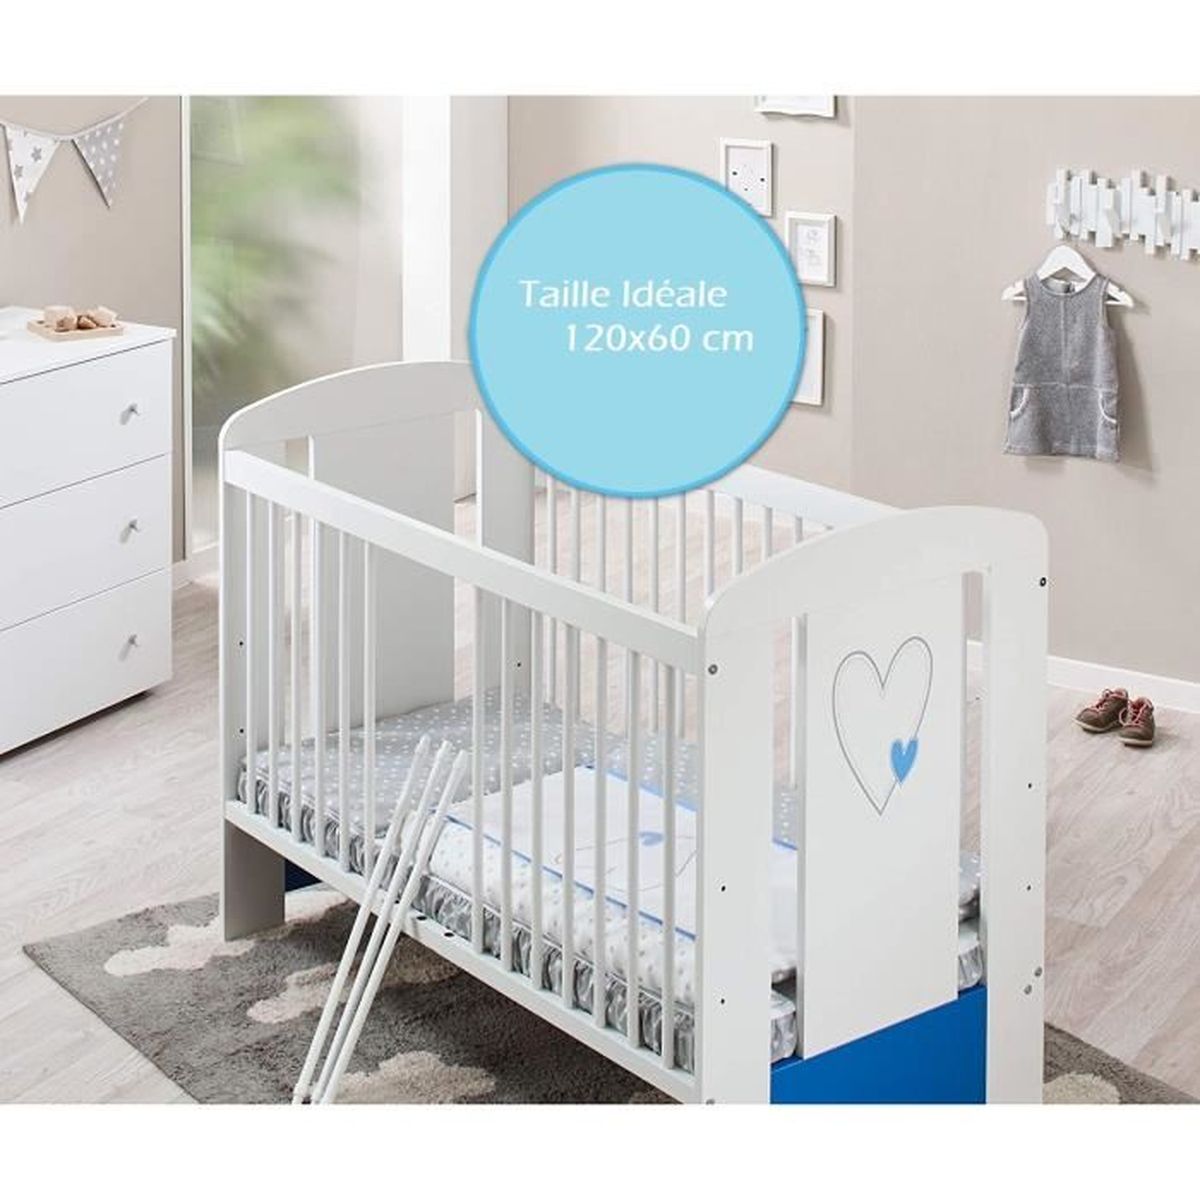 Set de lit Berceau bébé lit bébé cododo 120 x 60 cm hibou bleu Commode à langer bébé 3 tiroirs Matériel de haute qualité 